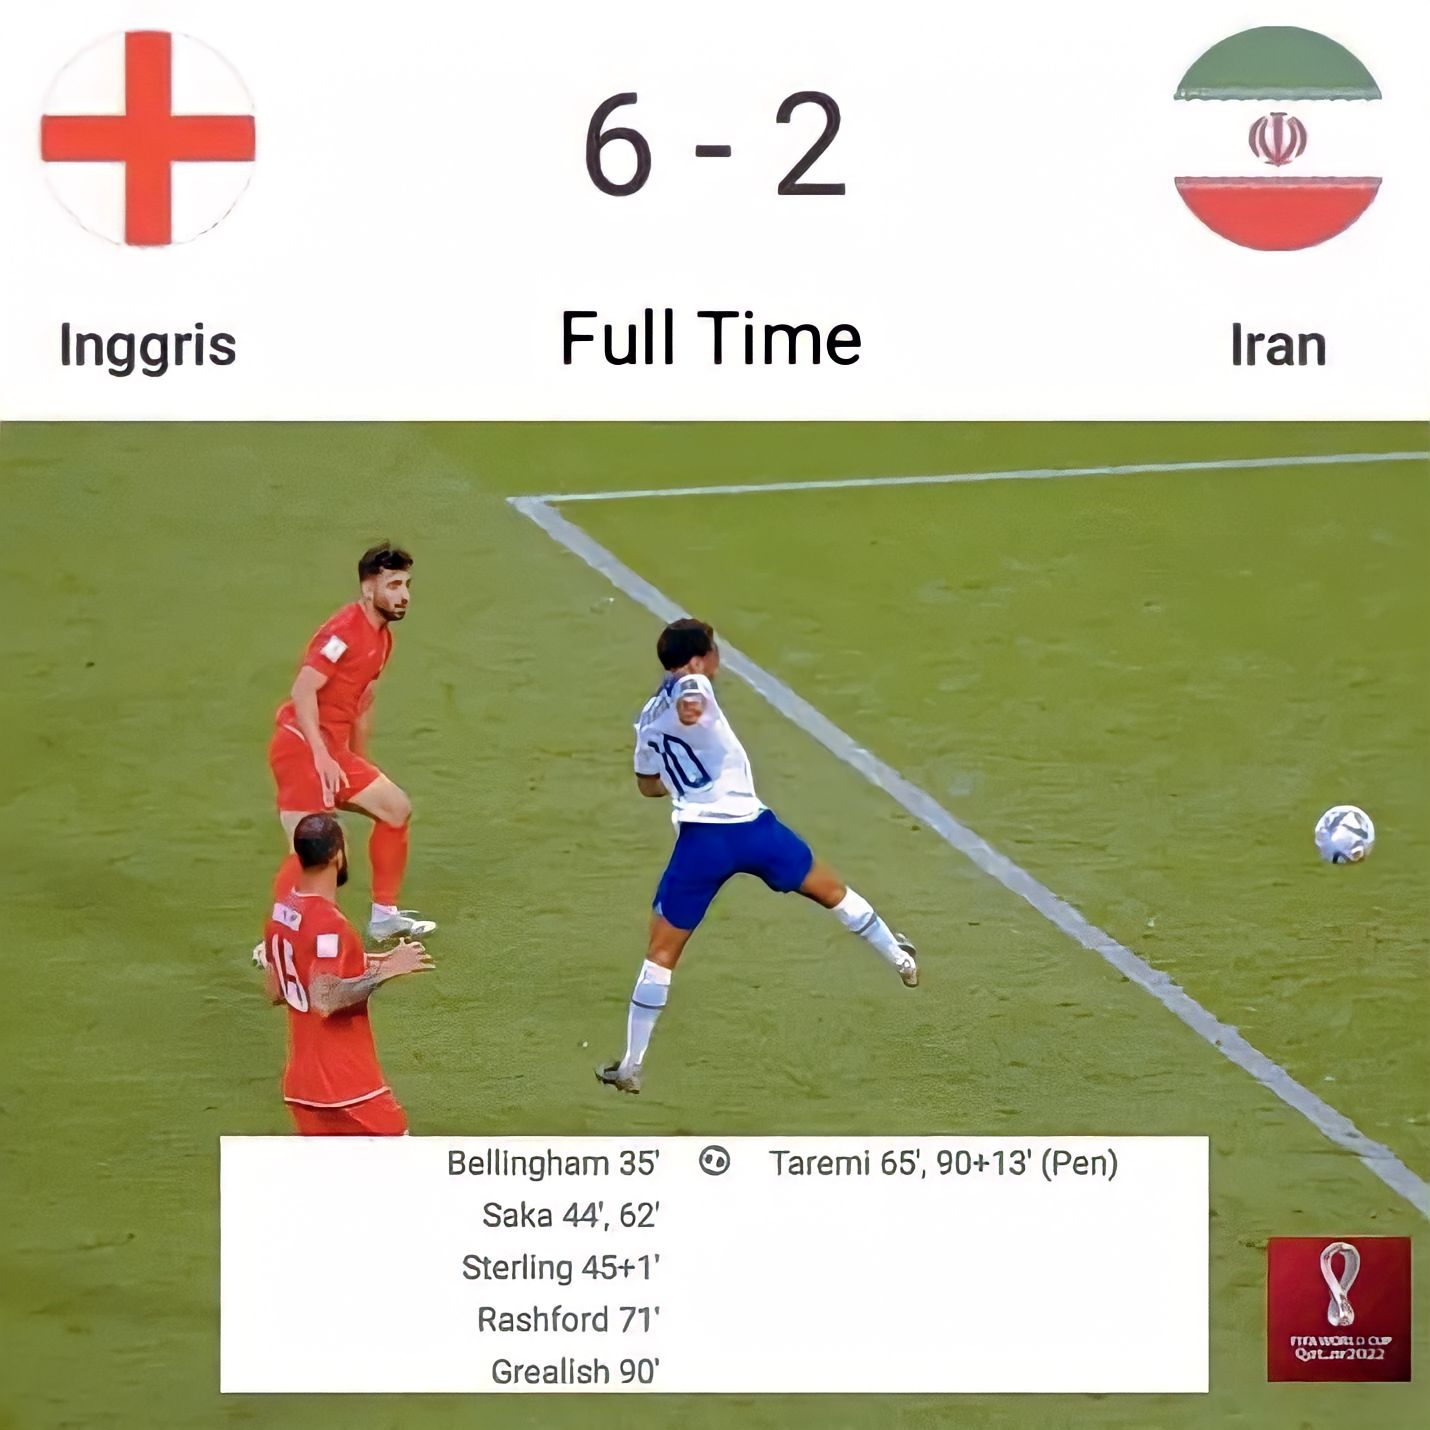 Hasil Piala Dunia Inggris vs Iran di Grup B Piala Dunia 2022